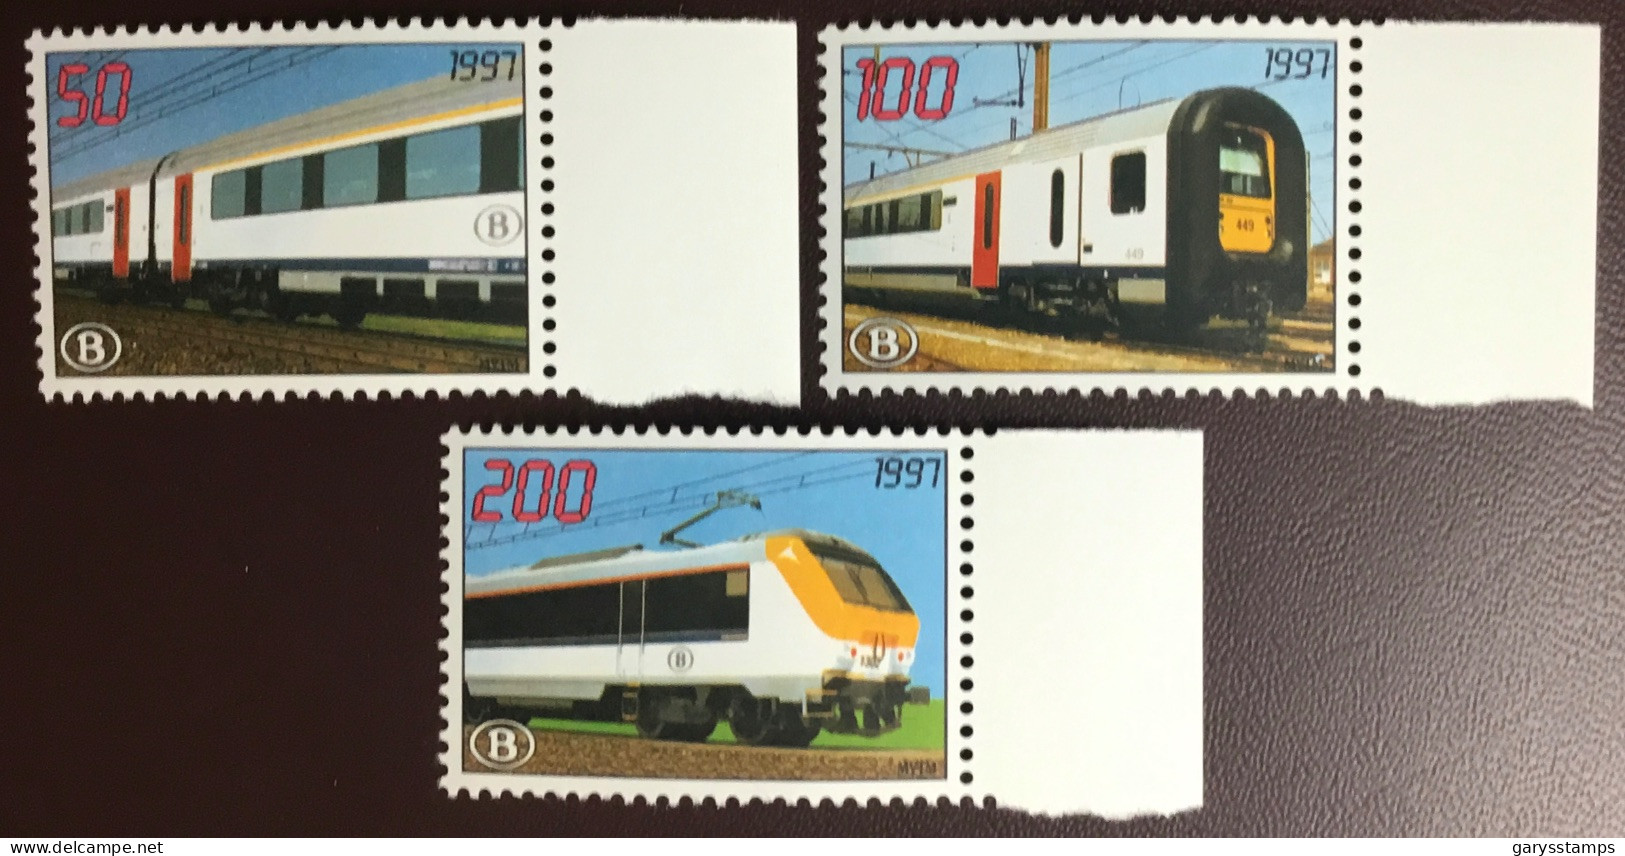 Belgium 1997 Modernisation Railway Stamps Set MNH - 1996-2013 Labels [TRV]